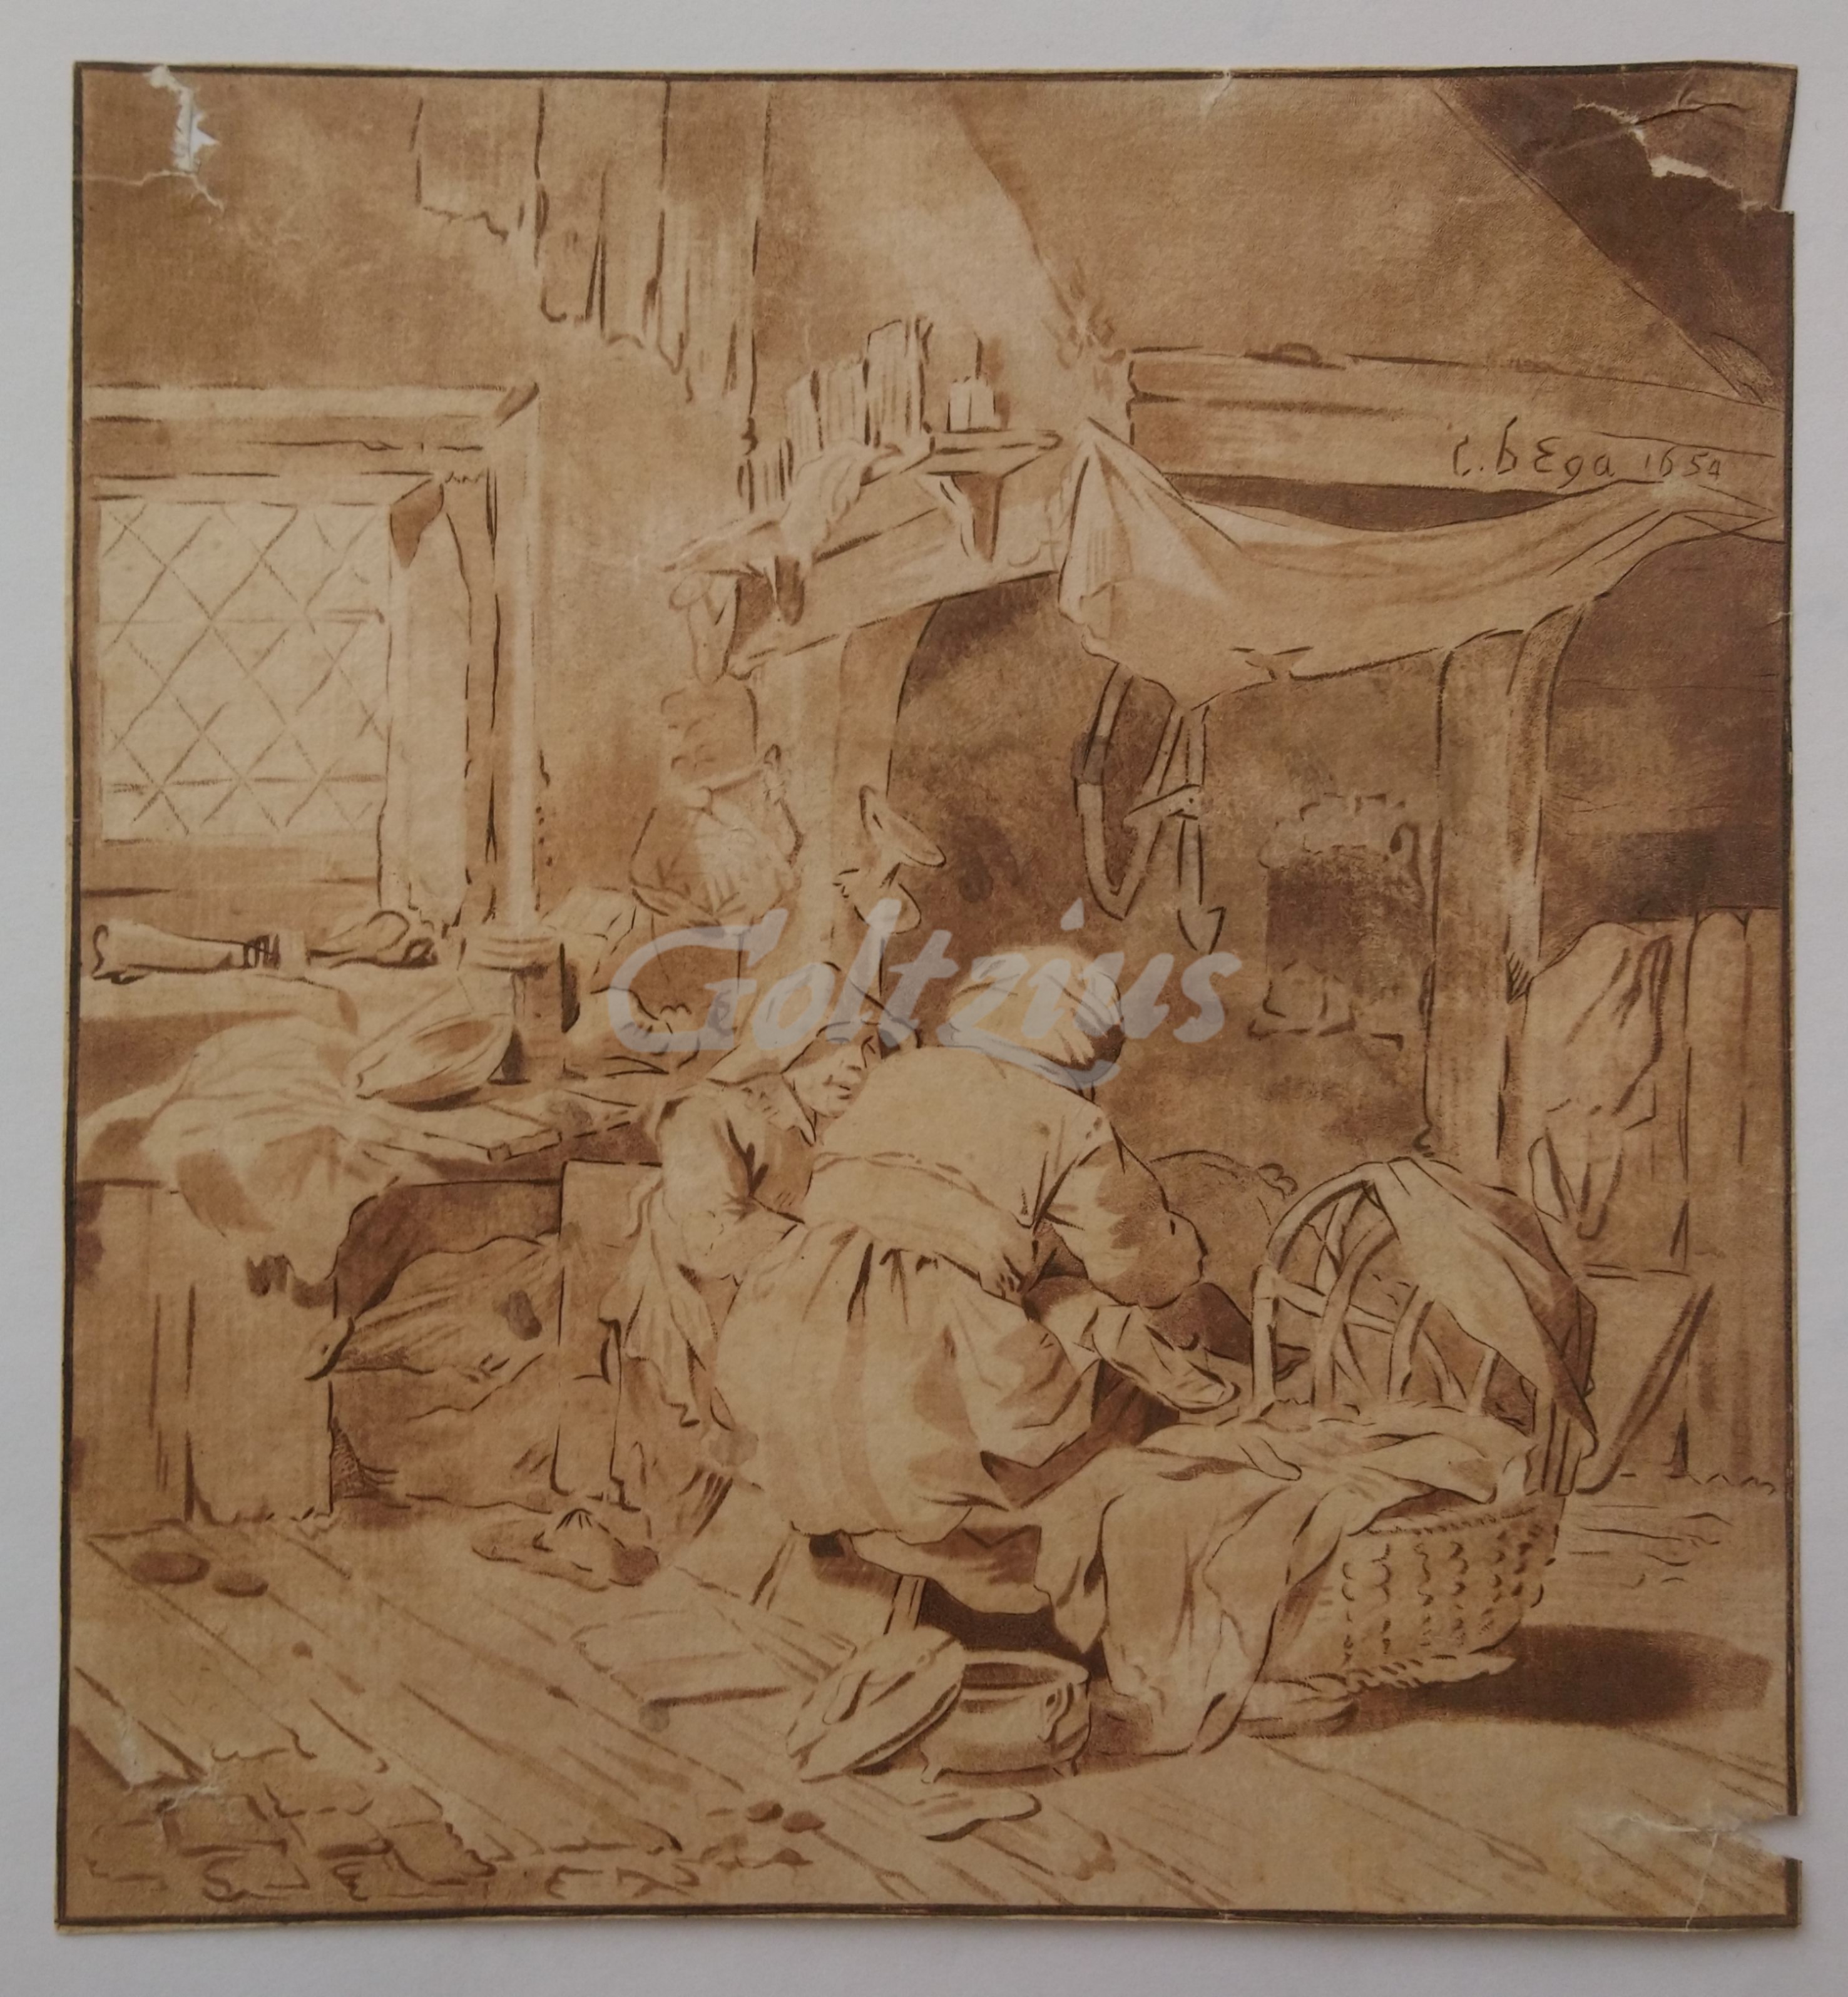 SCHREUDER, BERNARD, Kitchen interior with two women near a bassinet